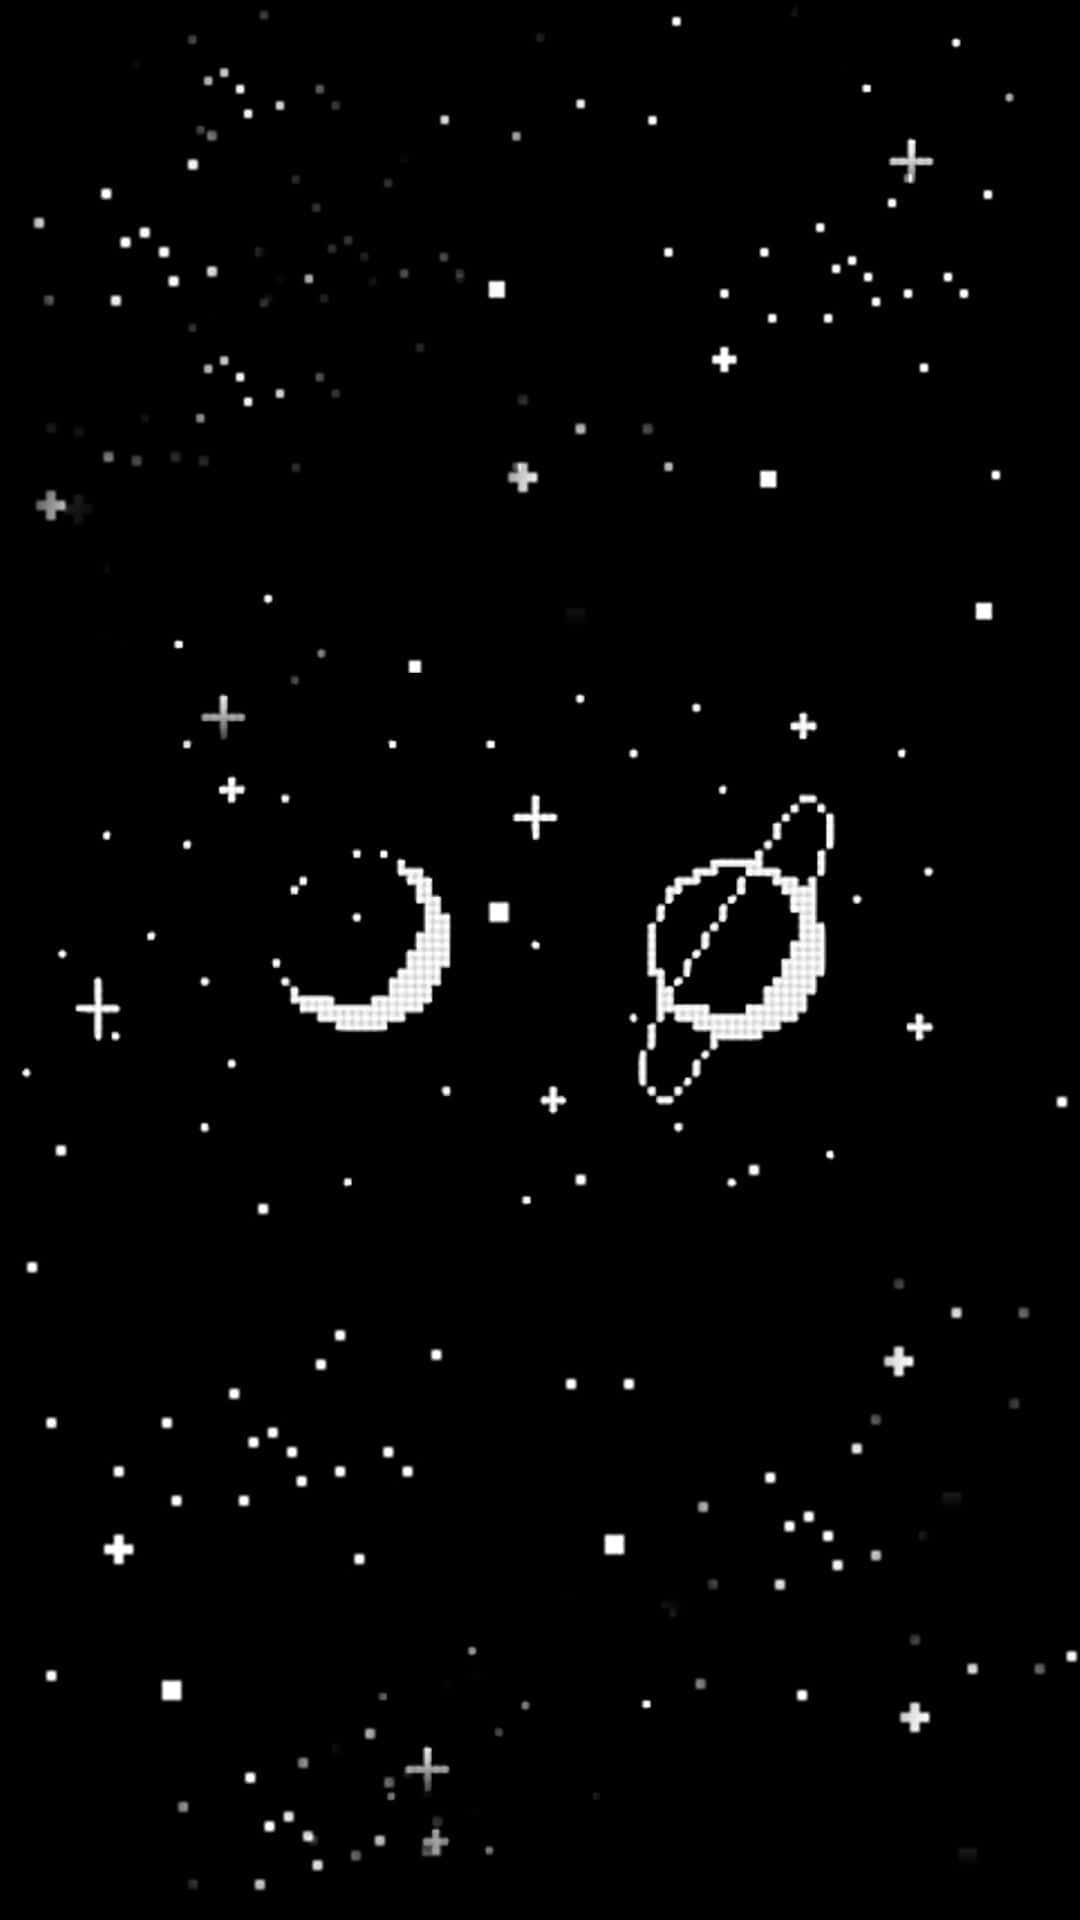 Etsort-hvidt Billede Af Rummet Med Stjerner Og Planeter